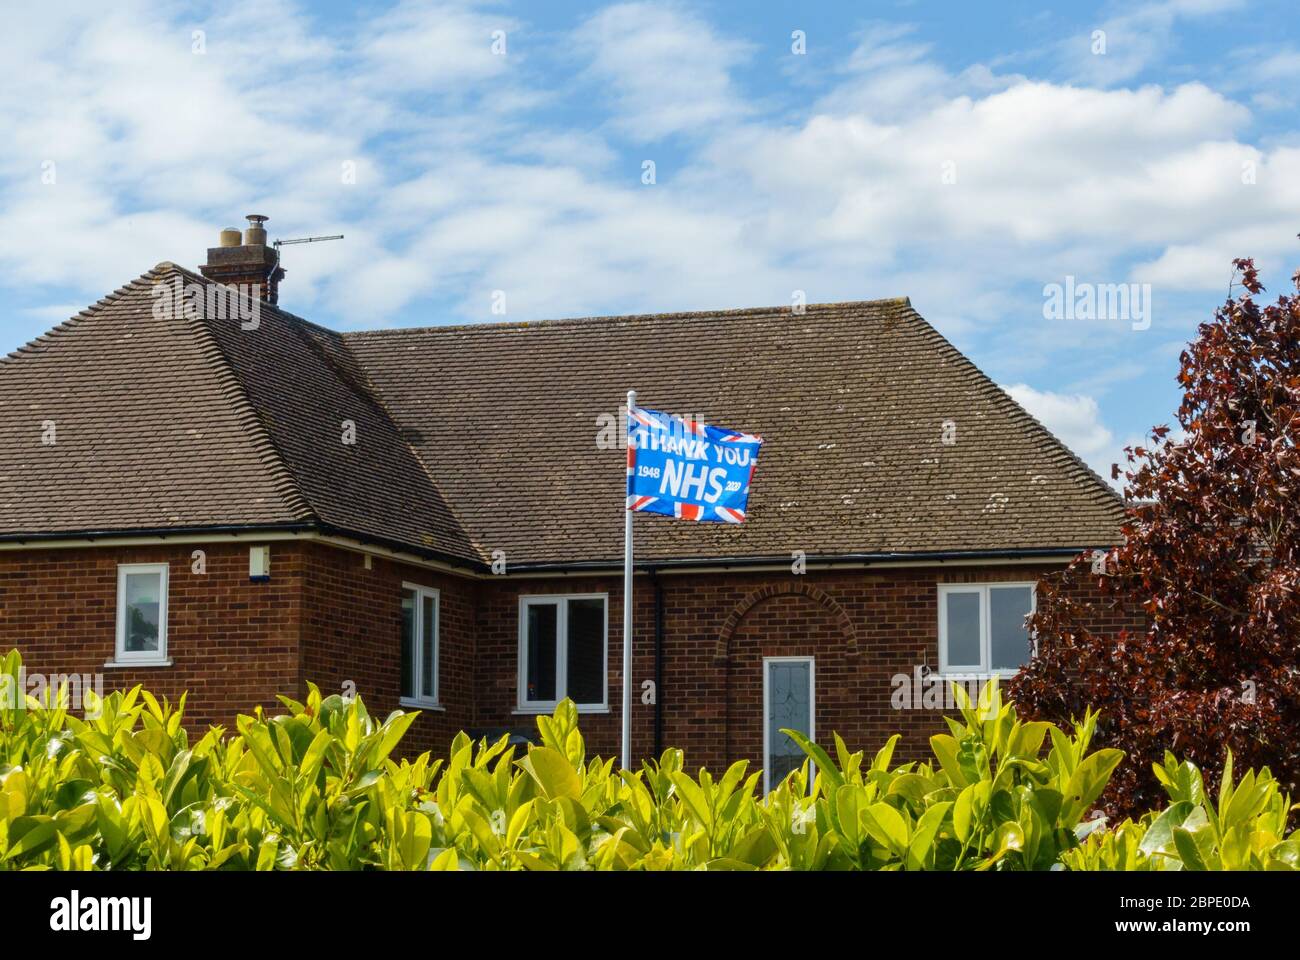 'Danke NHS' Gewerkschaftsflagge fliegt auf Flaggenmast vor dem Haus, um dem NHS während der Coronavirus-Pandemie zu danken, Mai 2020, England, Großbritannien Stockfoto